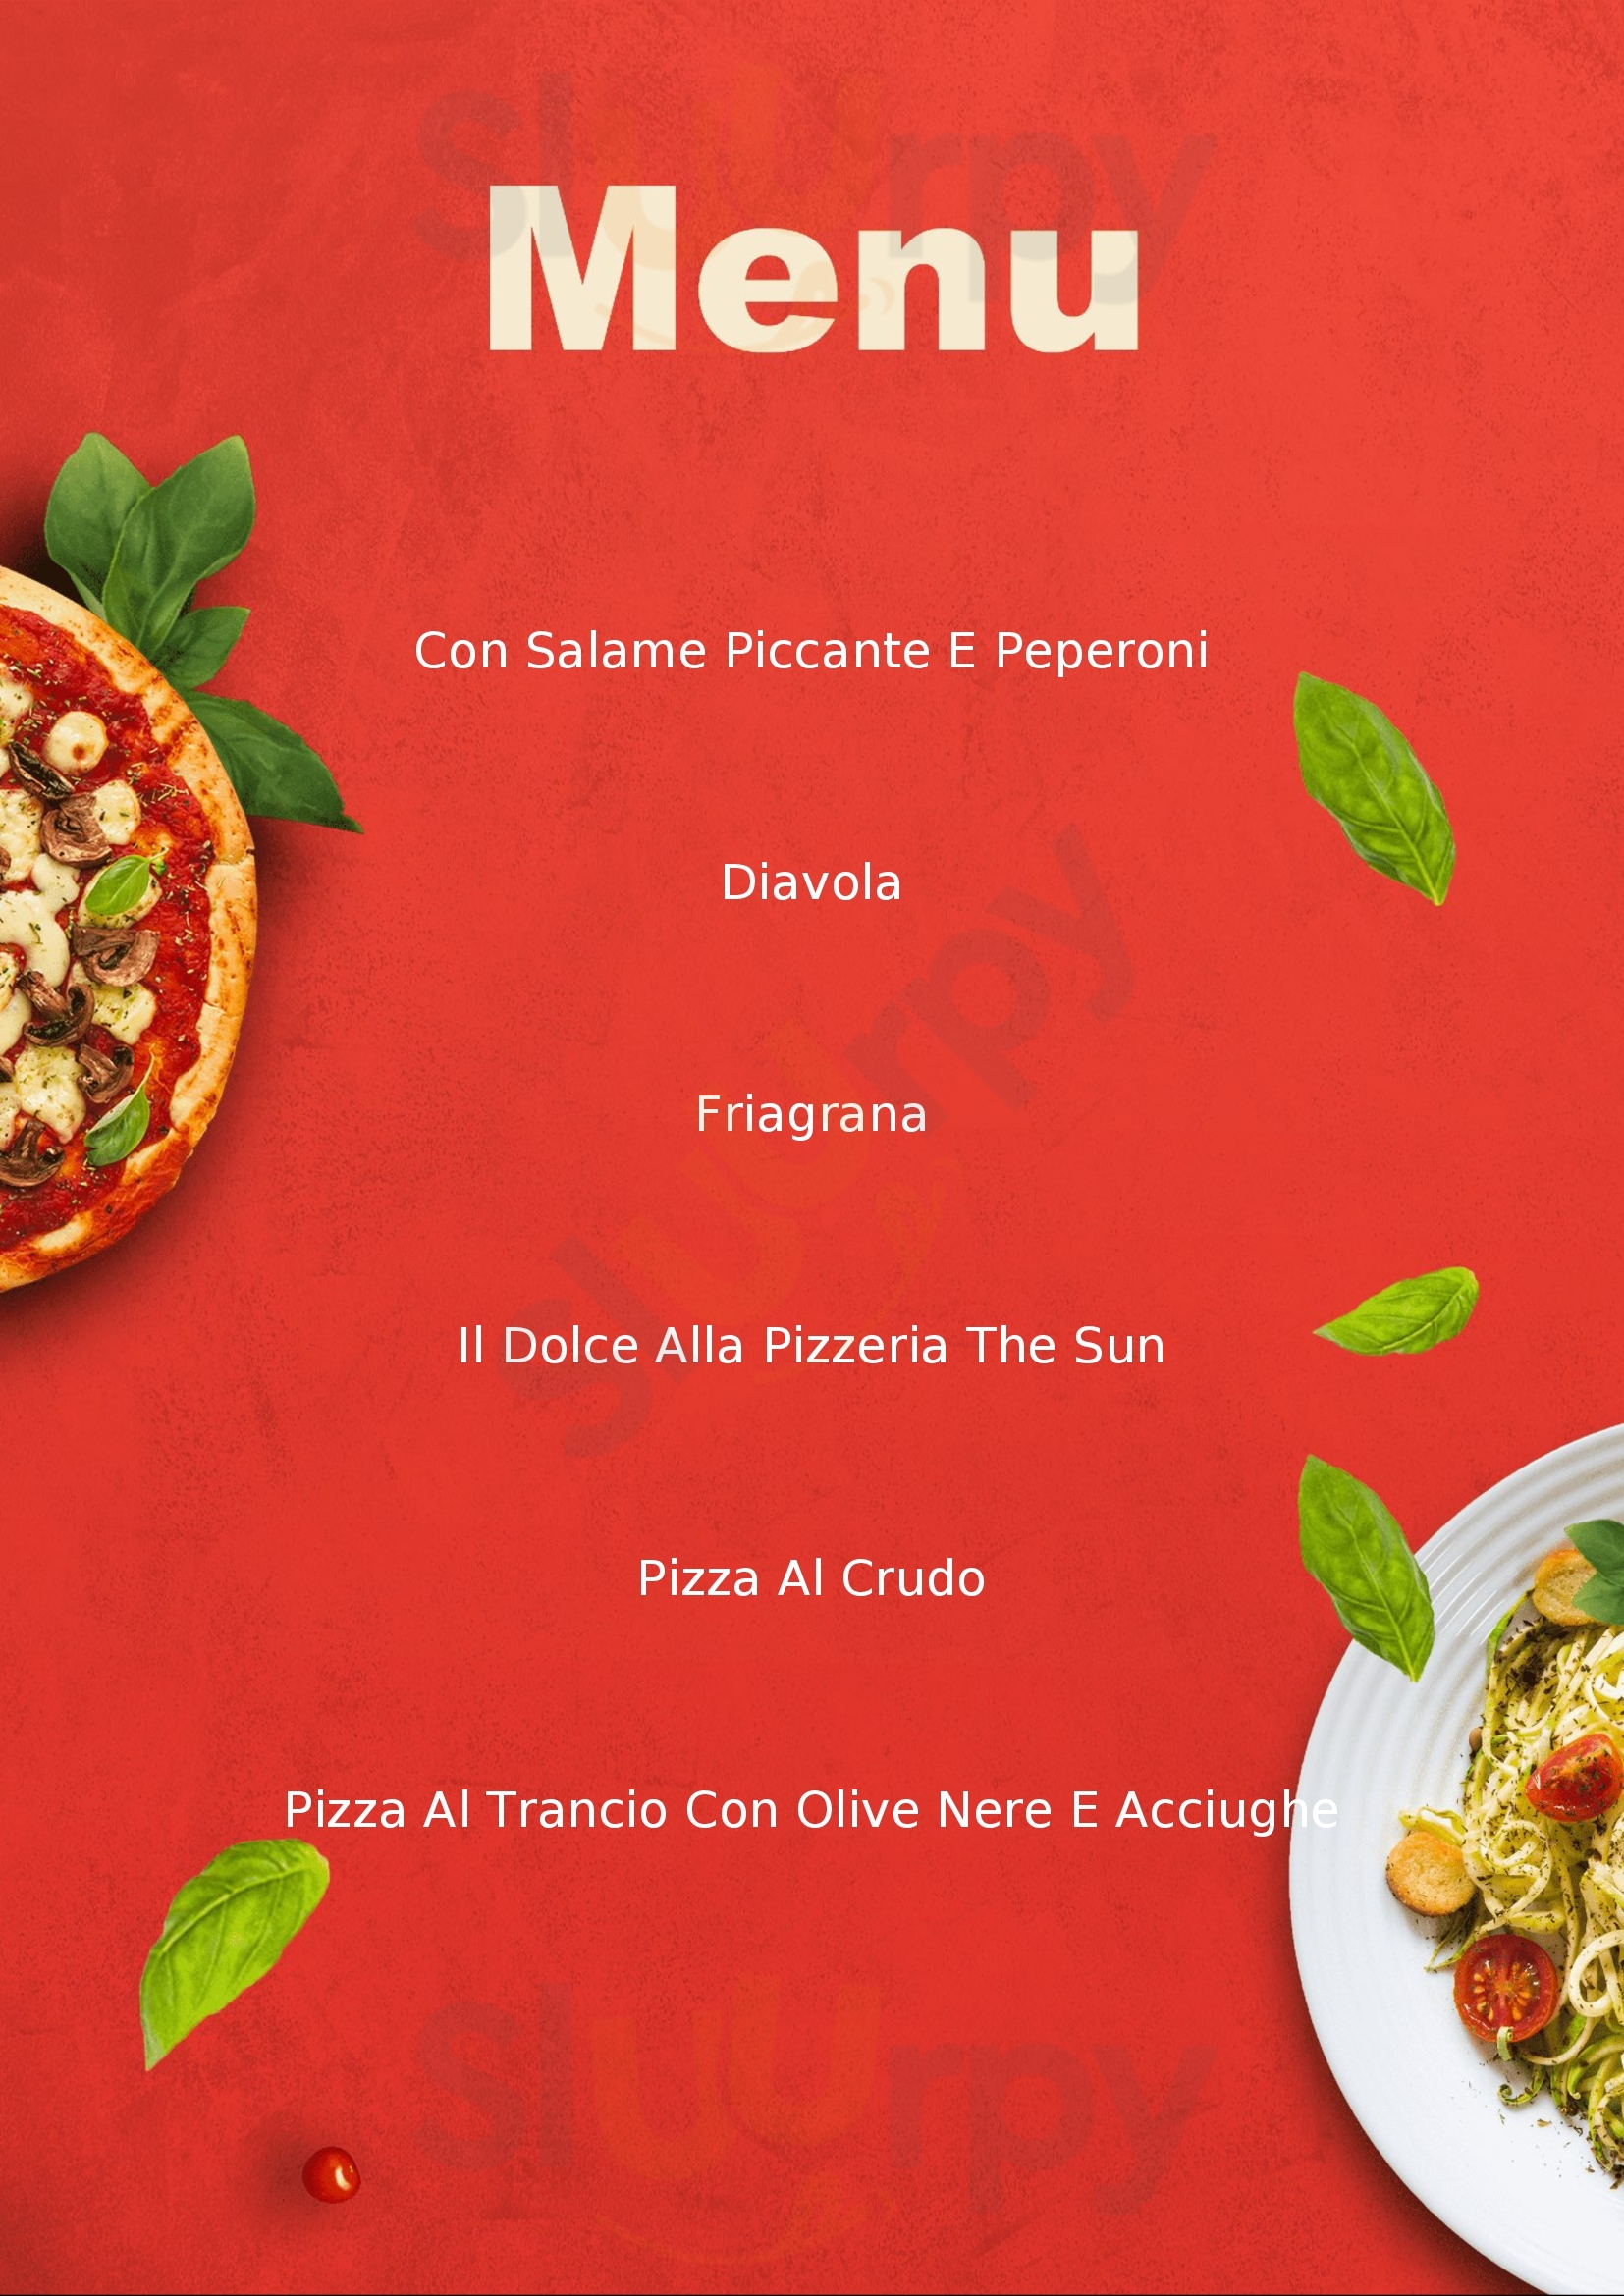 Pizzeria Sole Luna Pozzuolo Martesana menù 1 pagina